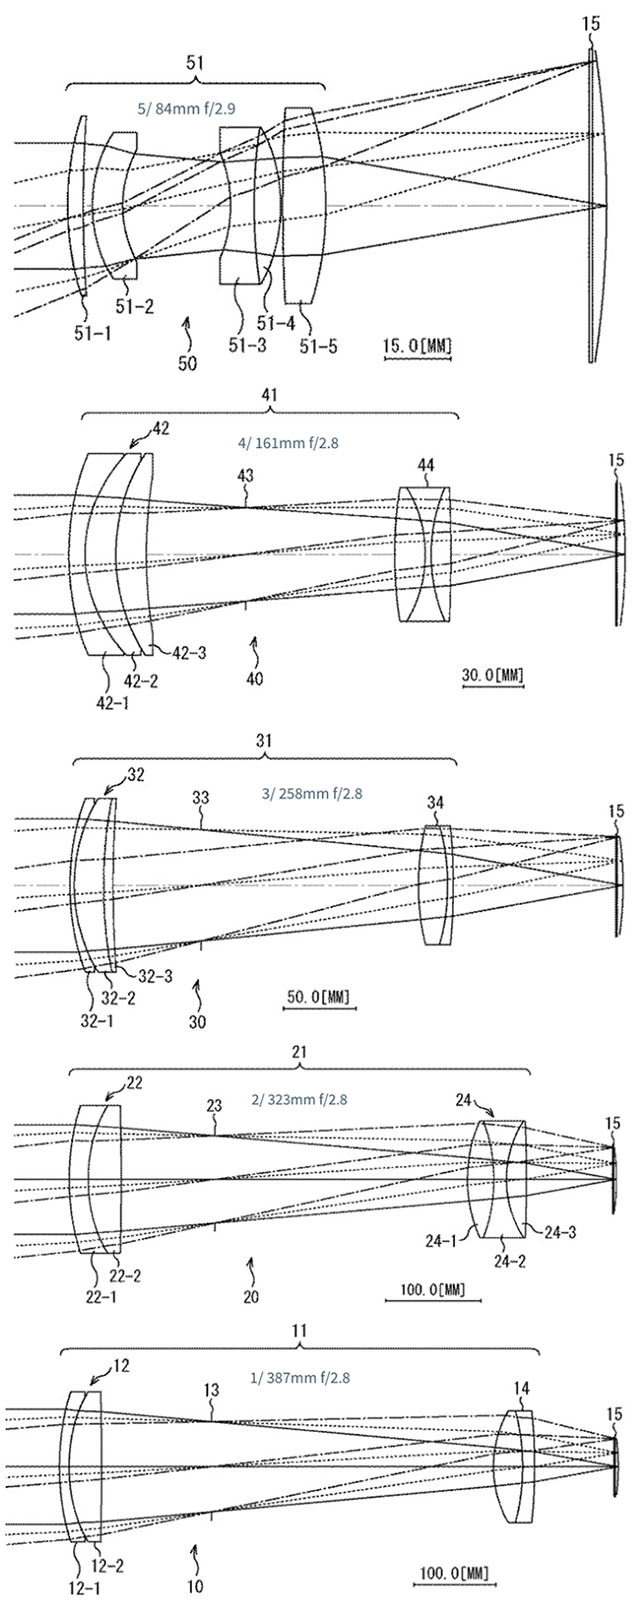 ソニーの中判フォーマット湾曲センサー用レンズの特許。